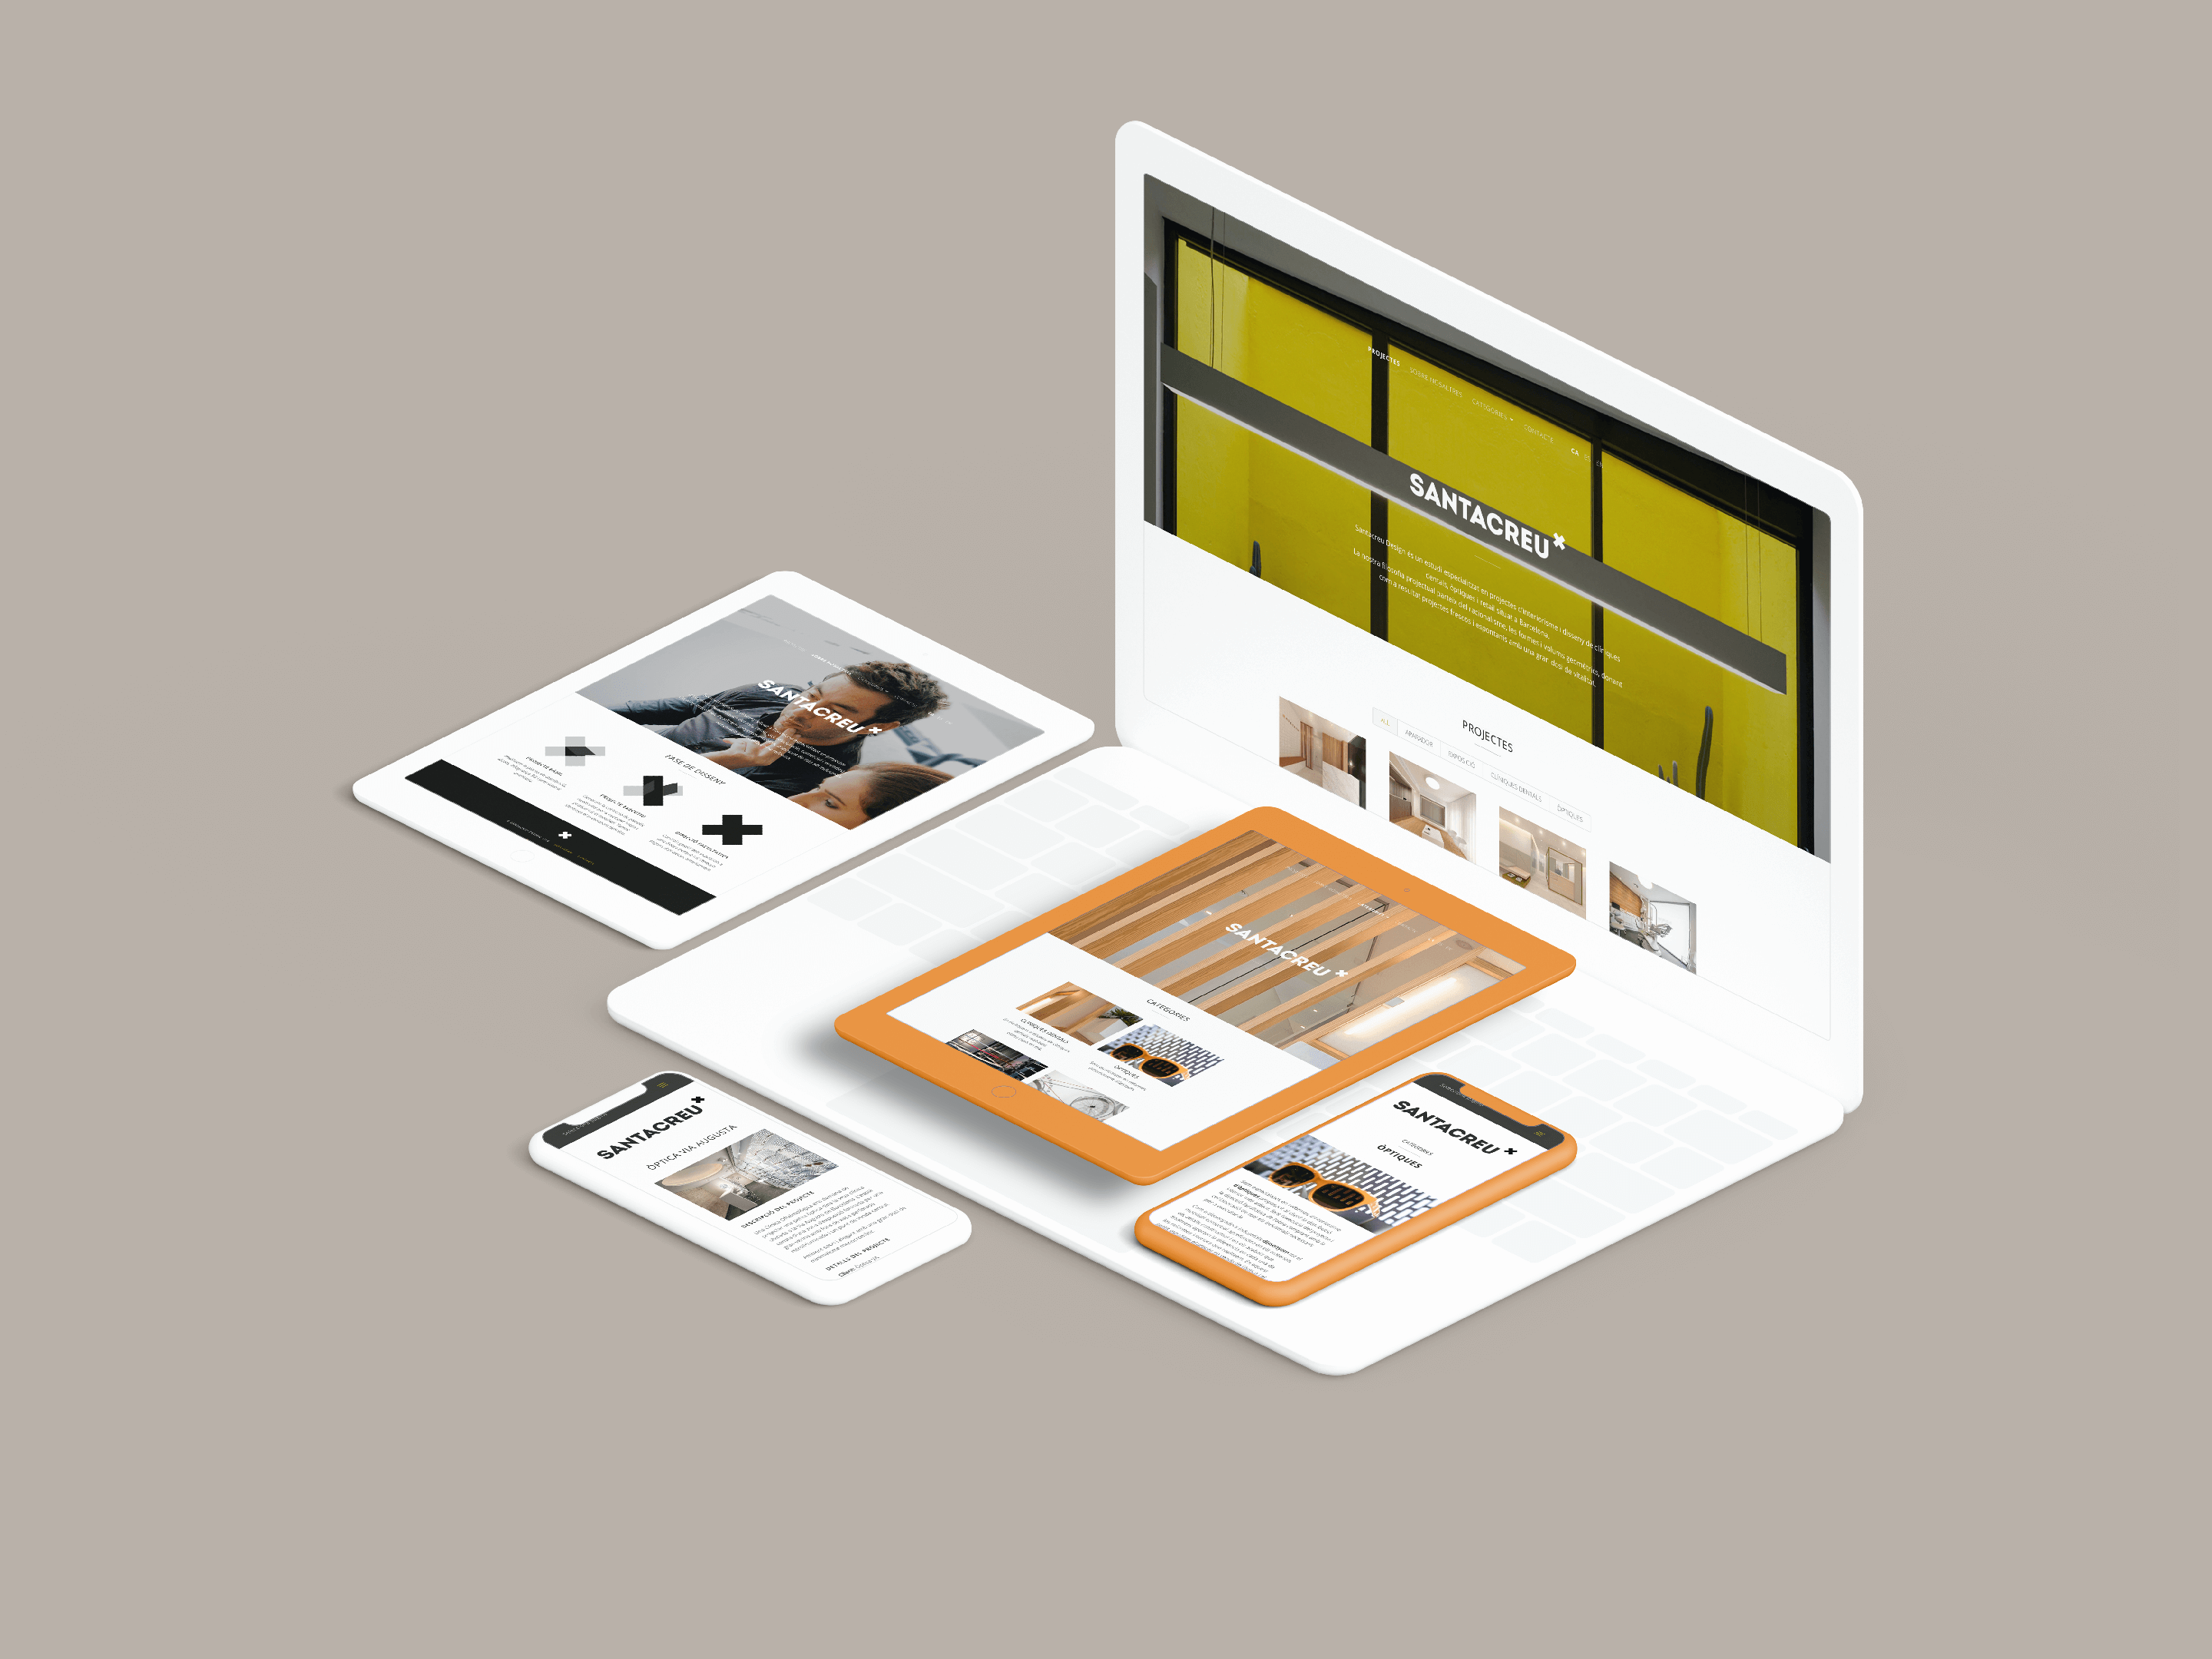 Web Responsive Santacreu Design | Ideamatic